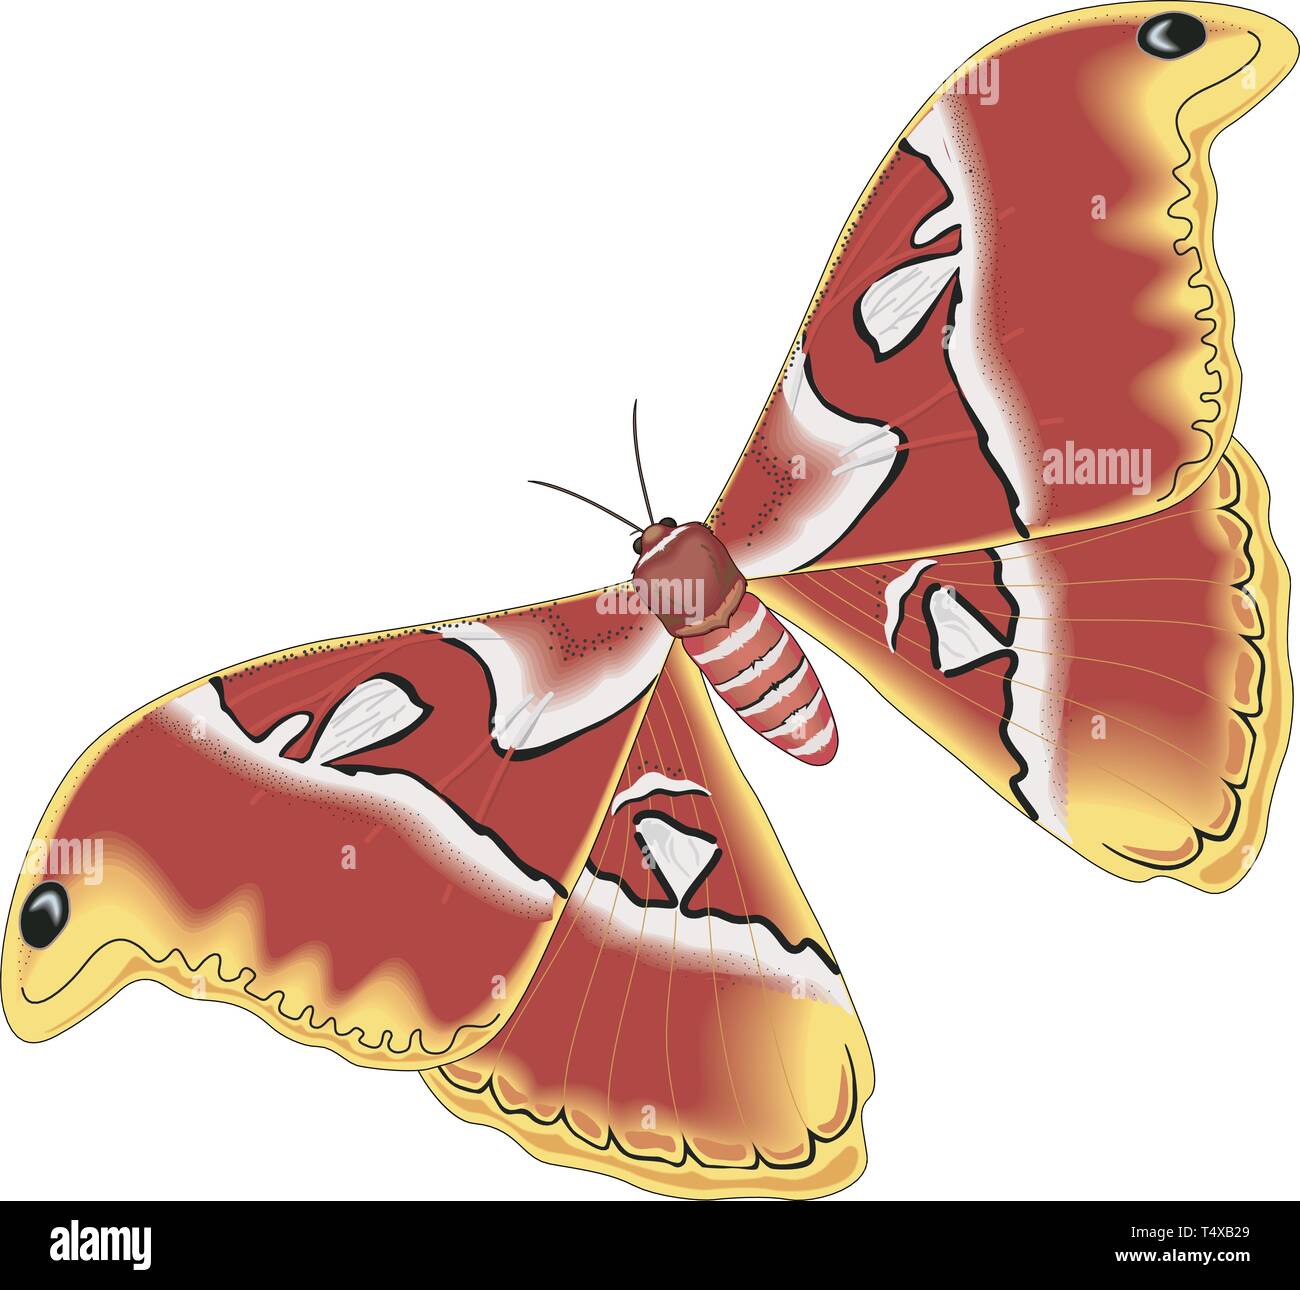 Atlas Moth Vector Illustration Stock Vector